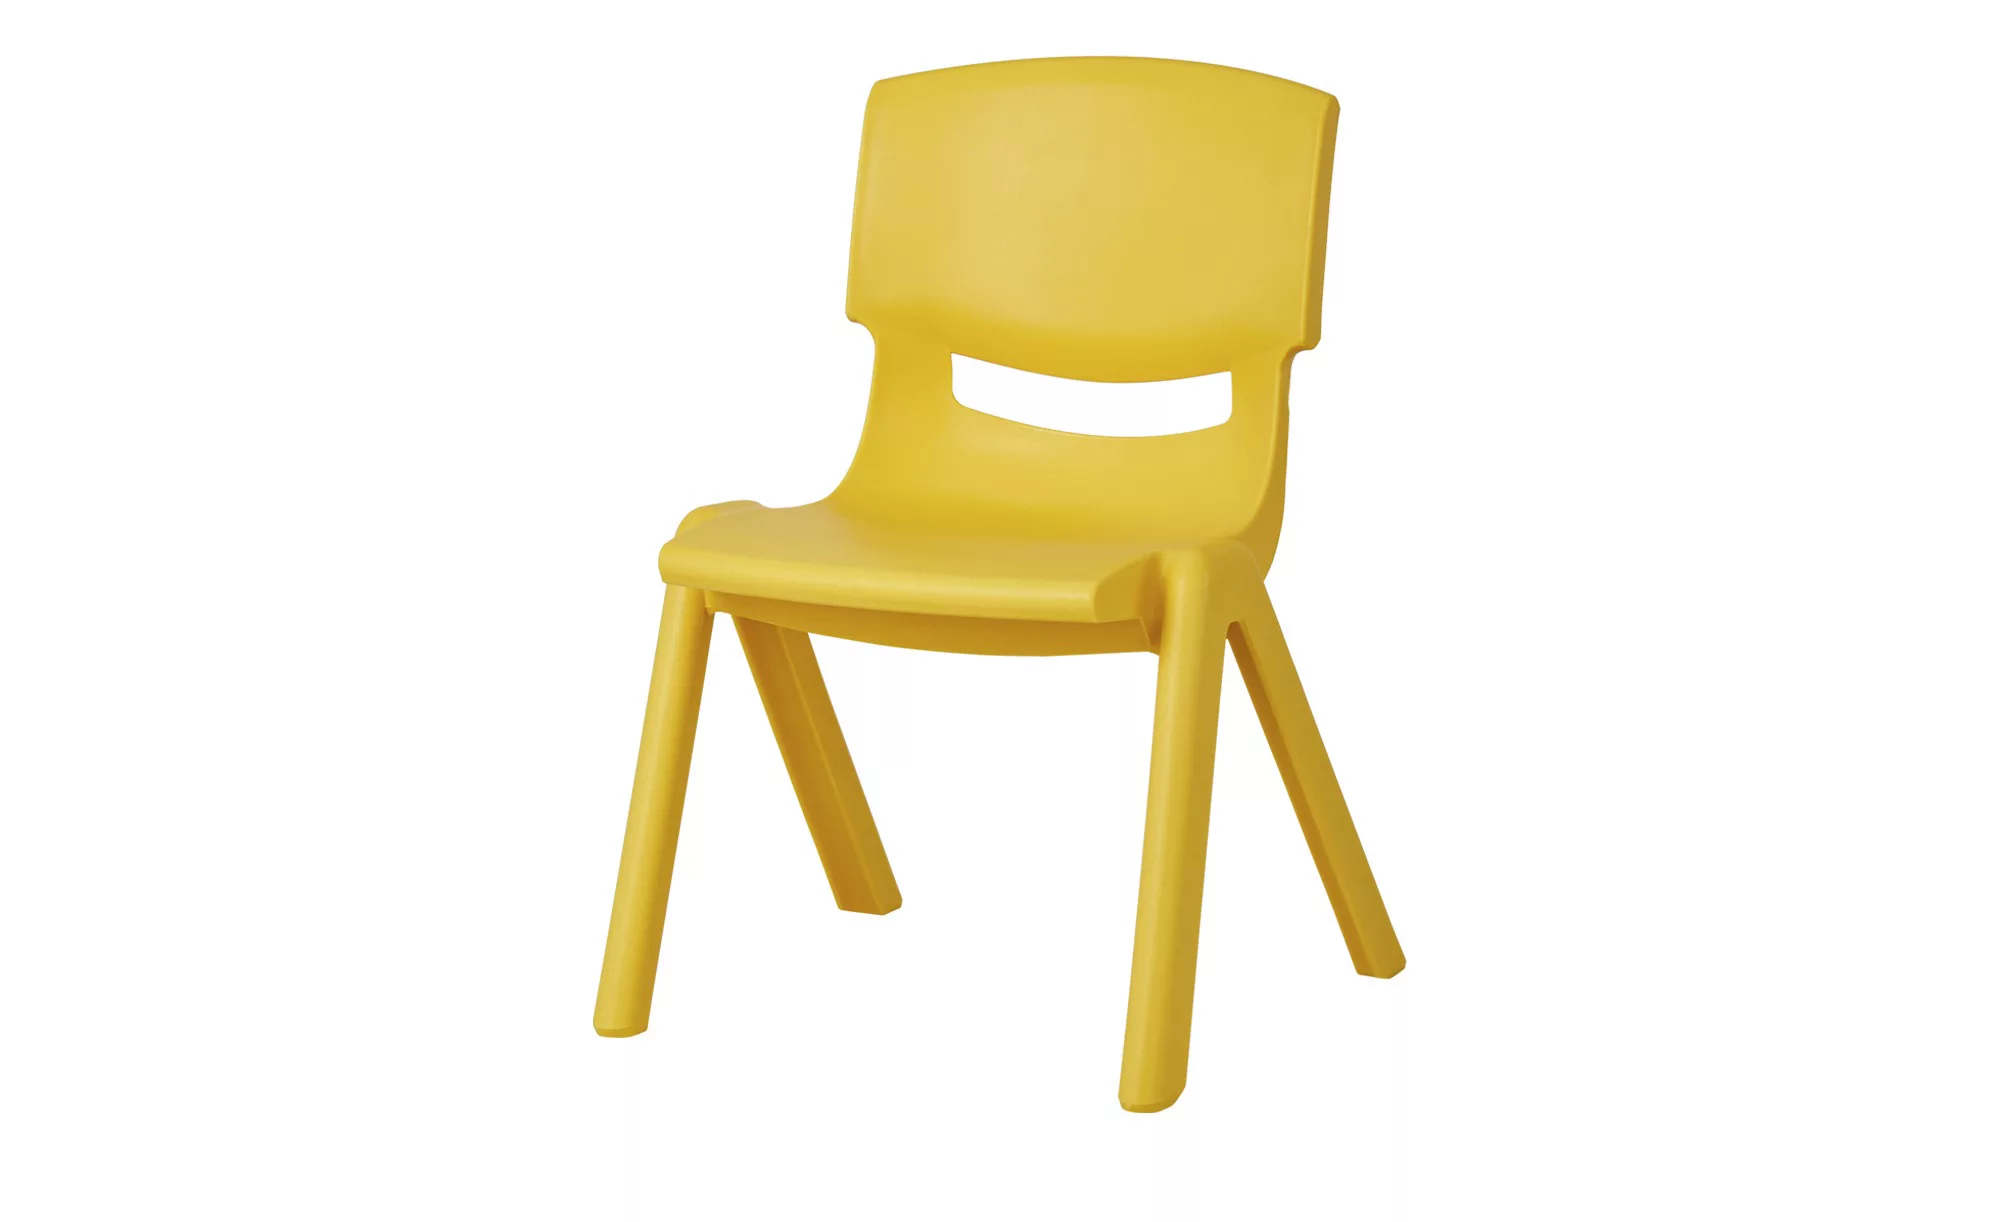 Kinderstuhl - gelb - 26 cm - 53 cm - 26 cm - Sconto günstig online kaufen